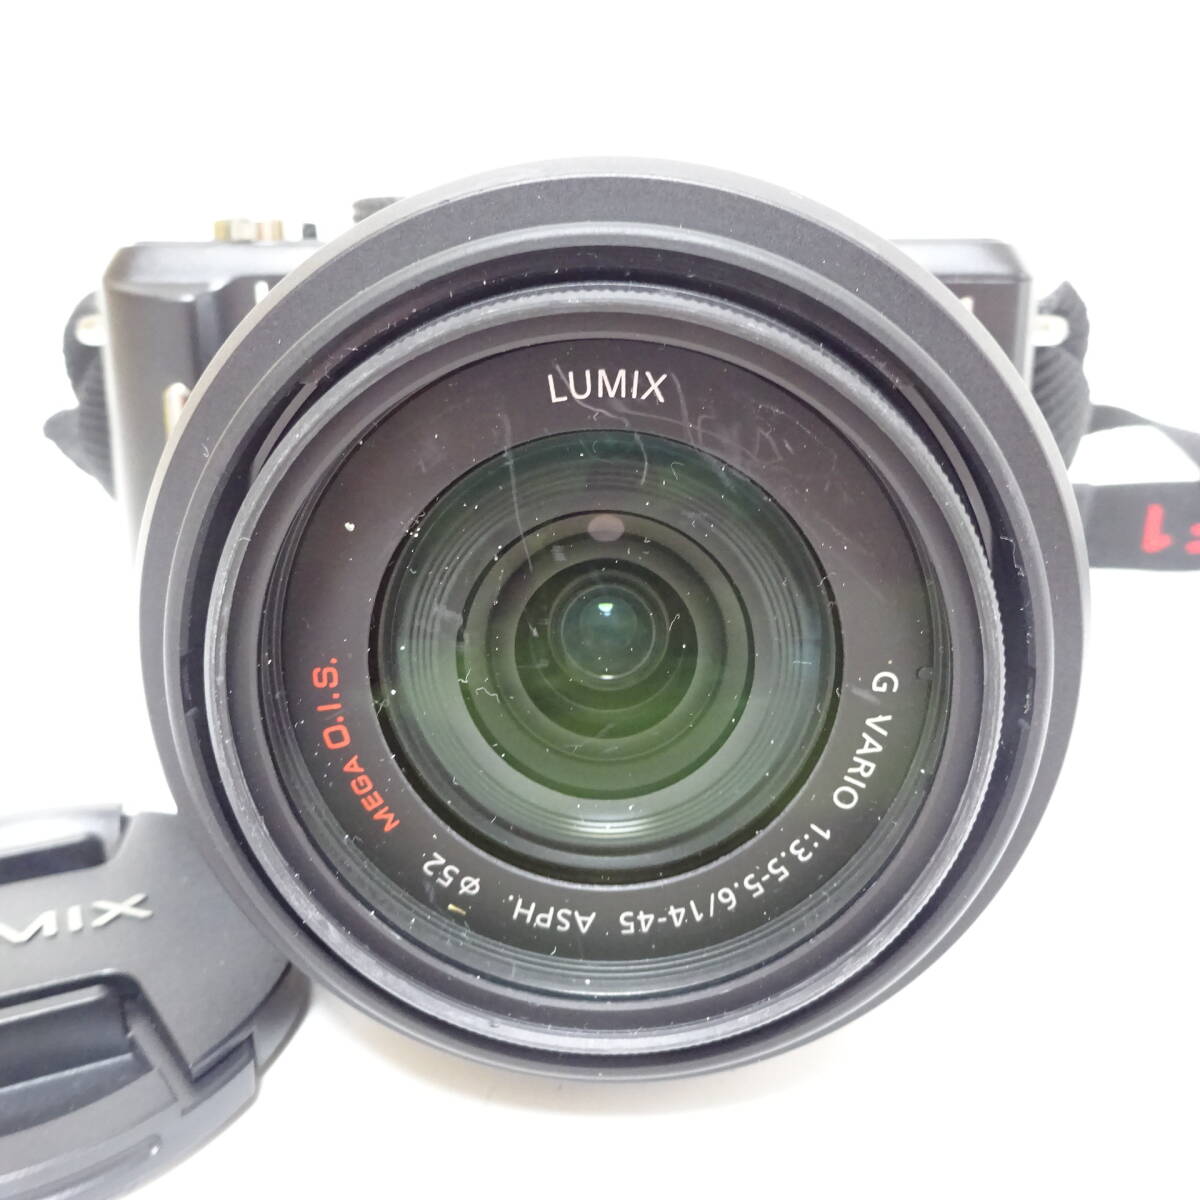 パナソニック LUMIX DMC-GF1 デジタルカメラ 1:3.5-5.6/14-45 レンズ Panasonic 動作未確認 ジャンク品 60サイズ発送 KK-2666749-209-mrrz